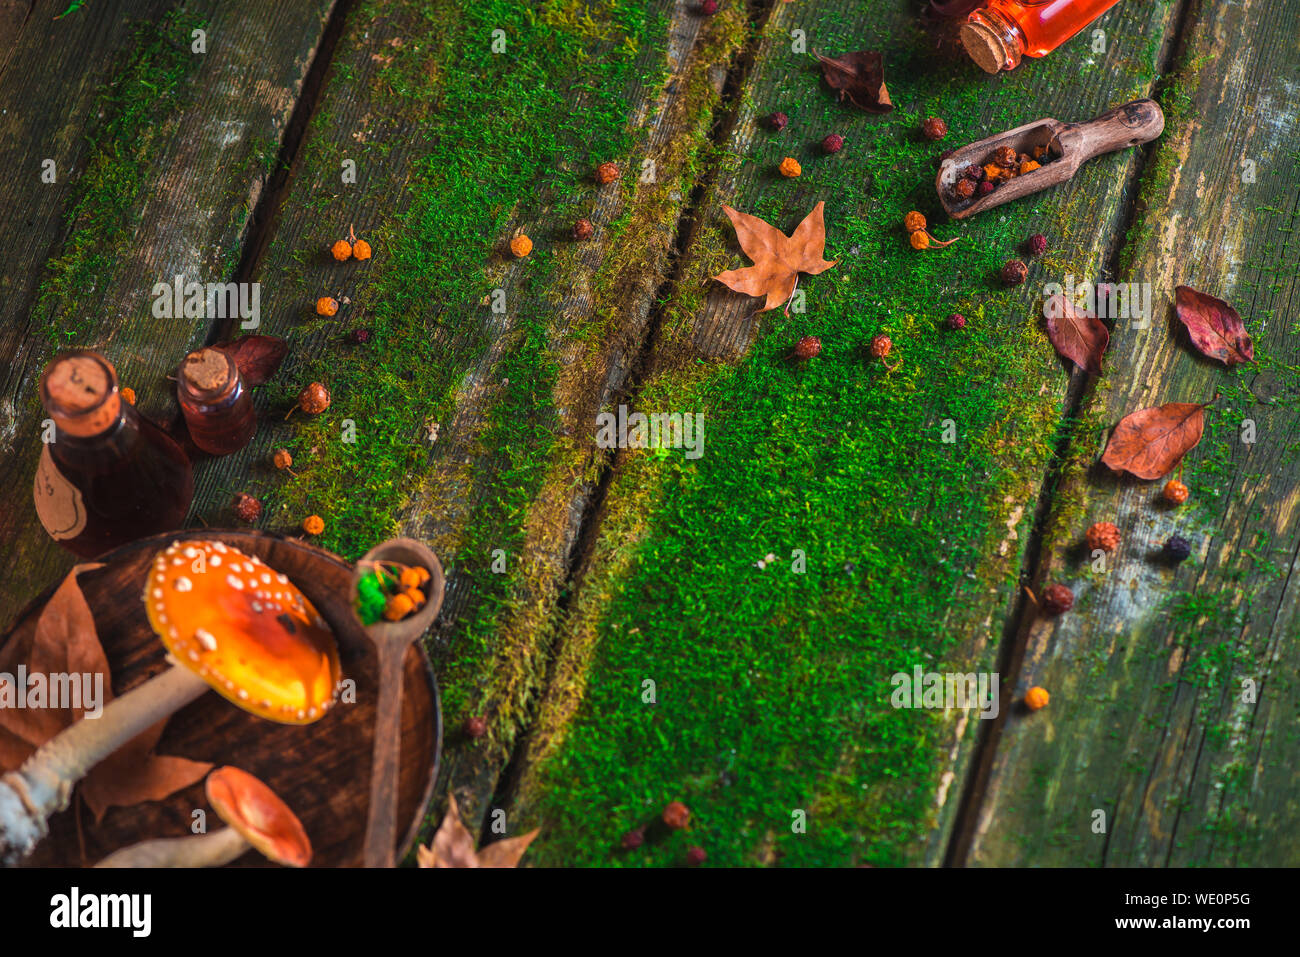 Rote giftige Pilze auf einem Holztisch mit Moos und Blättern. Herbst flach mit Kopie Raum Stockfoto